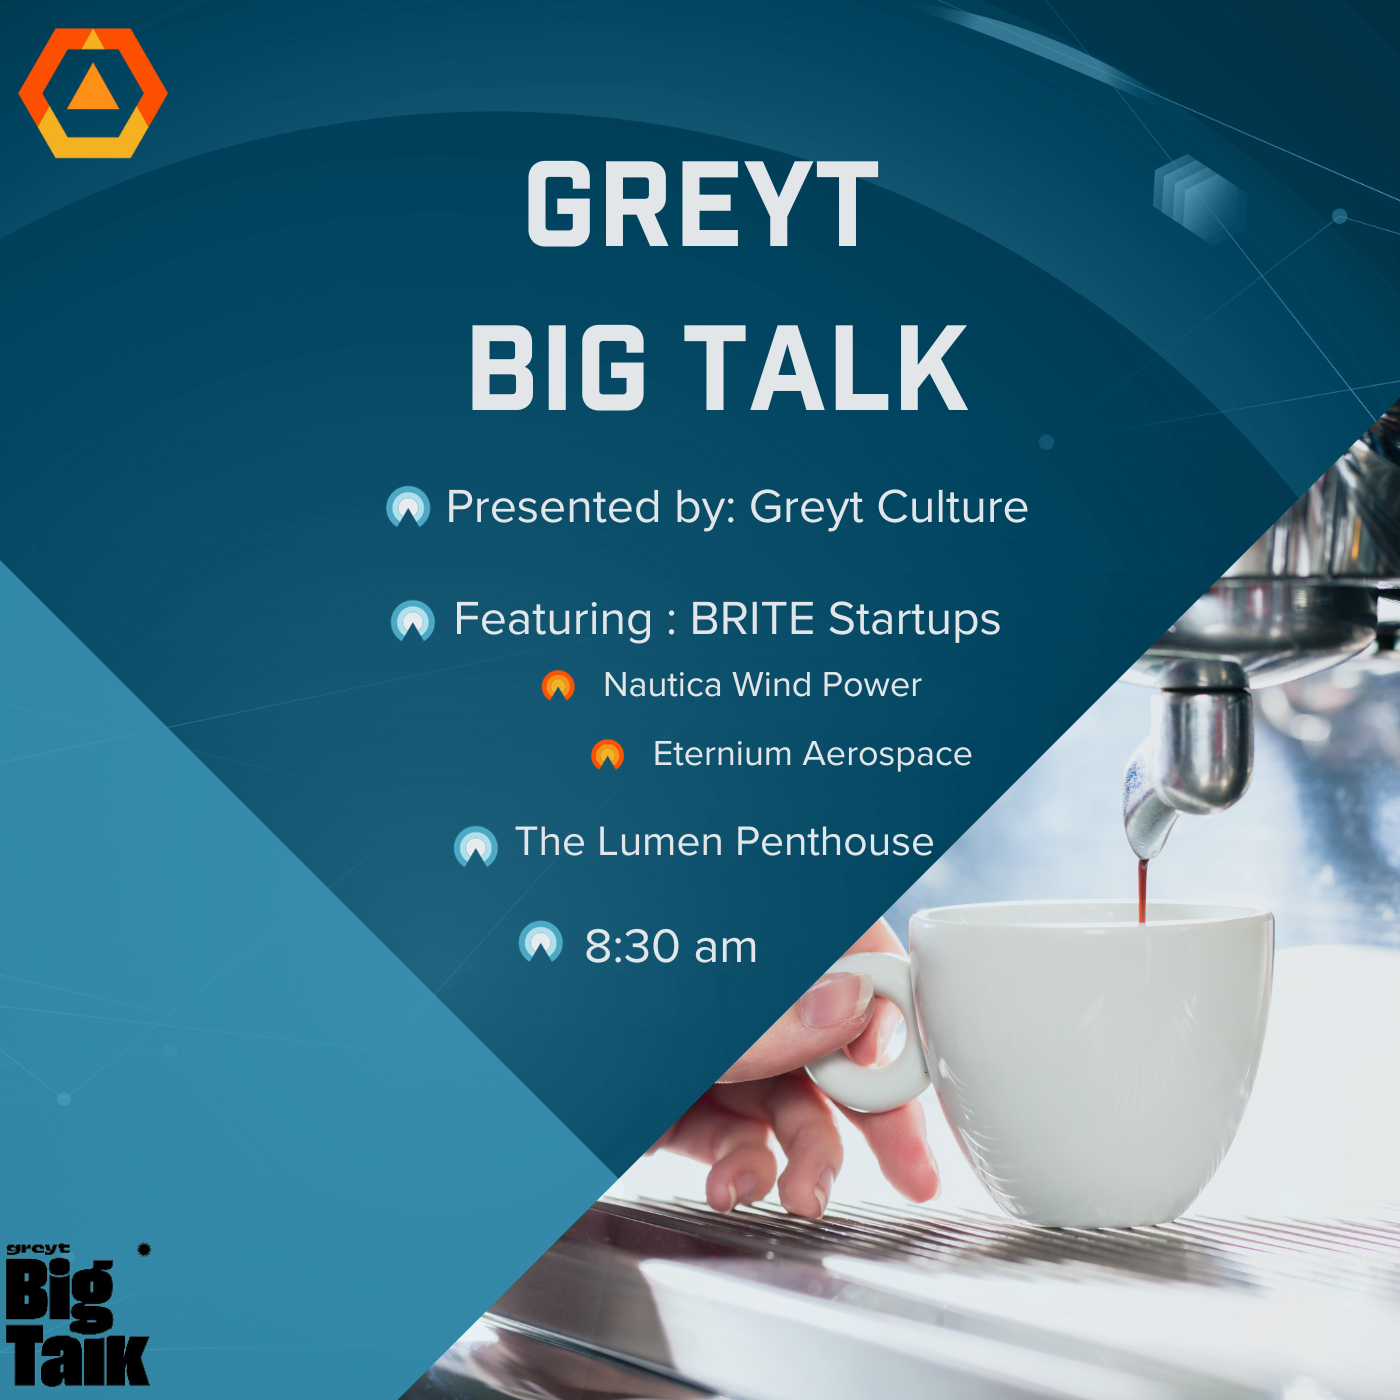 GREYT Big Talk, presented by GREYT Culture